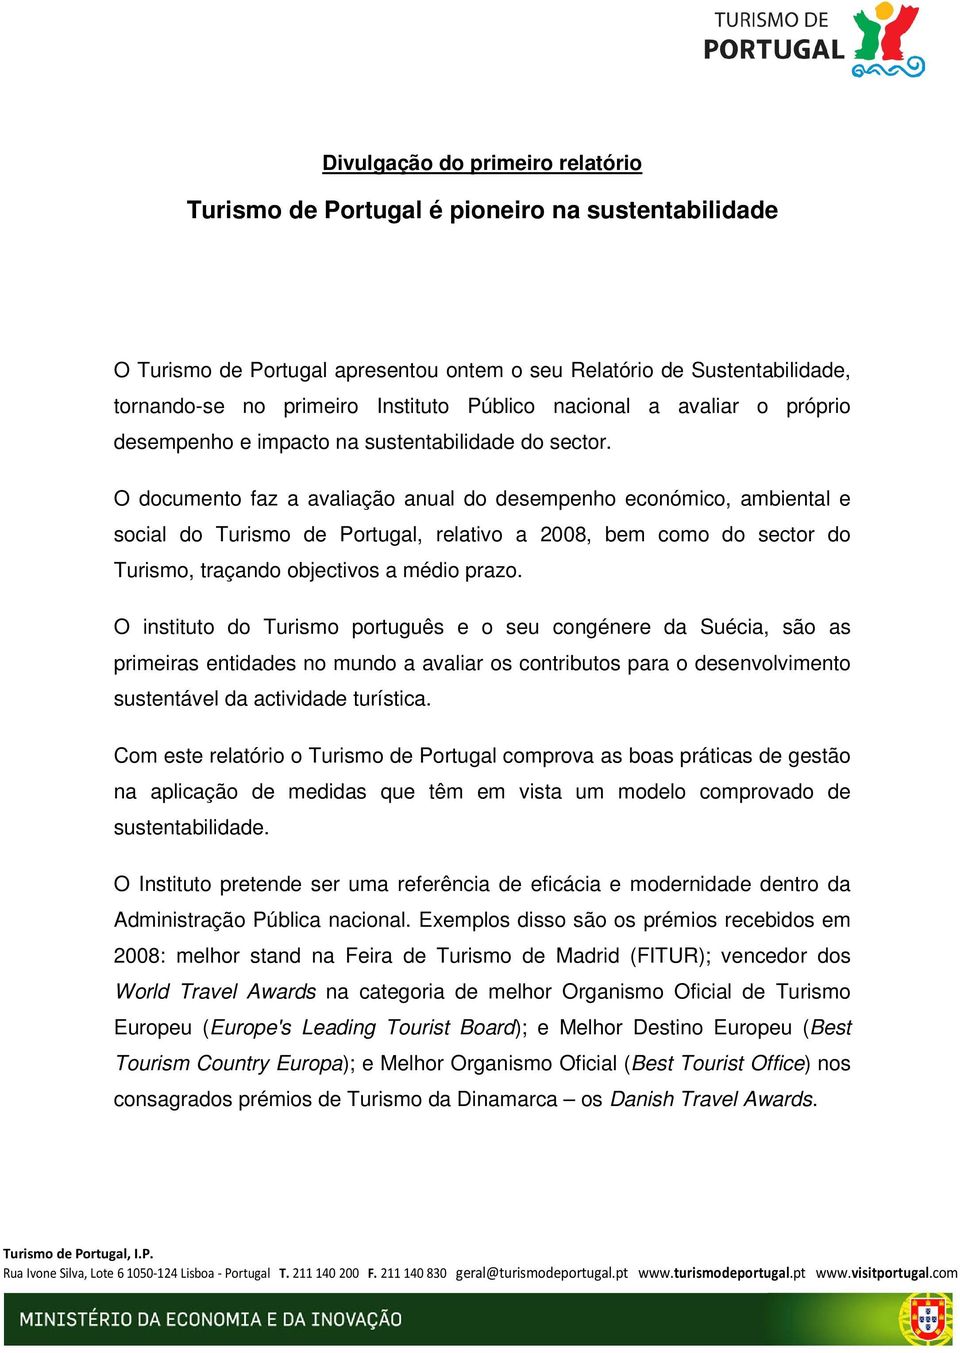 O documento faz a avaliação anual do desempenho económico, ambiental e social do Turismo de Portugal, relativo a 2008, bem como do sector do Turismo, traçando objectivos a médio prazo.